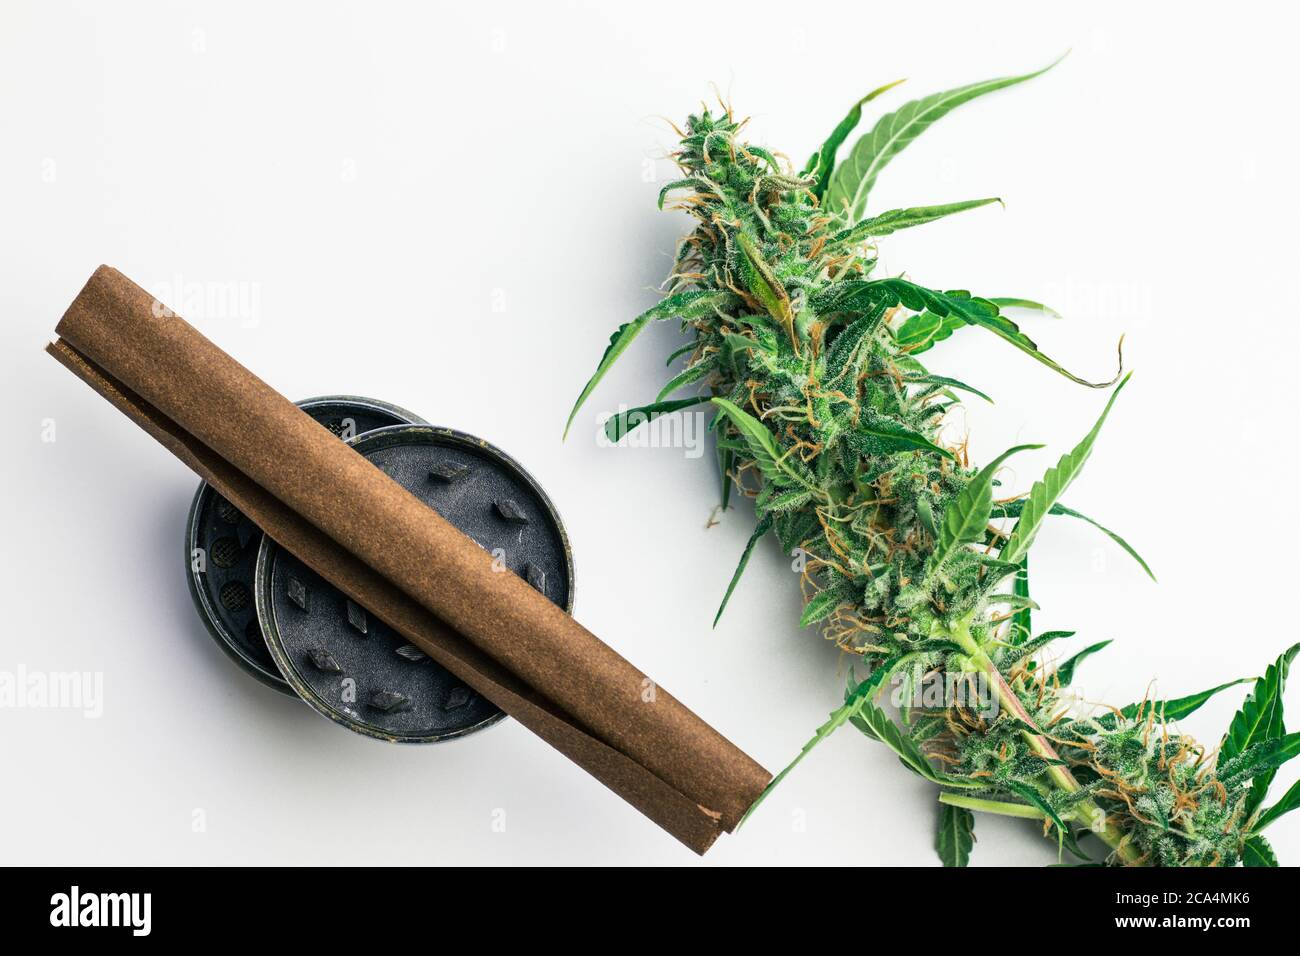 Legale Cannabisbranche. Kommerzielles Marihuana für medizinische Zwecke. Raucherzubehör. Unkraut stumpf mit Pflanze. Weißer Hintergrund, Draufsicht Stockfoto